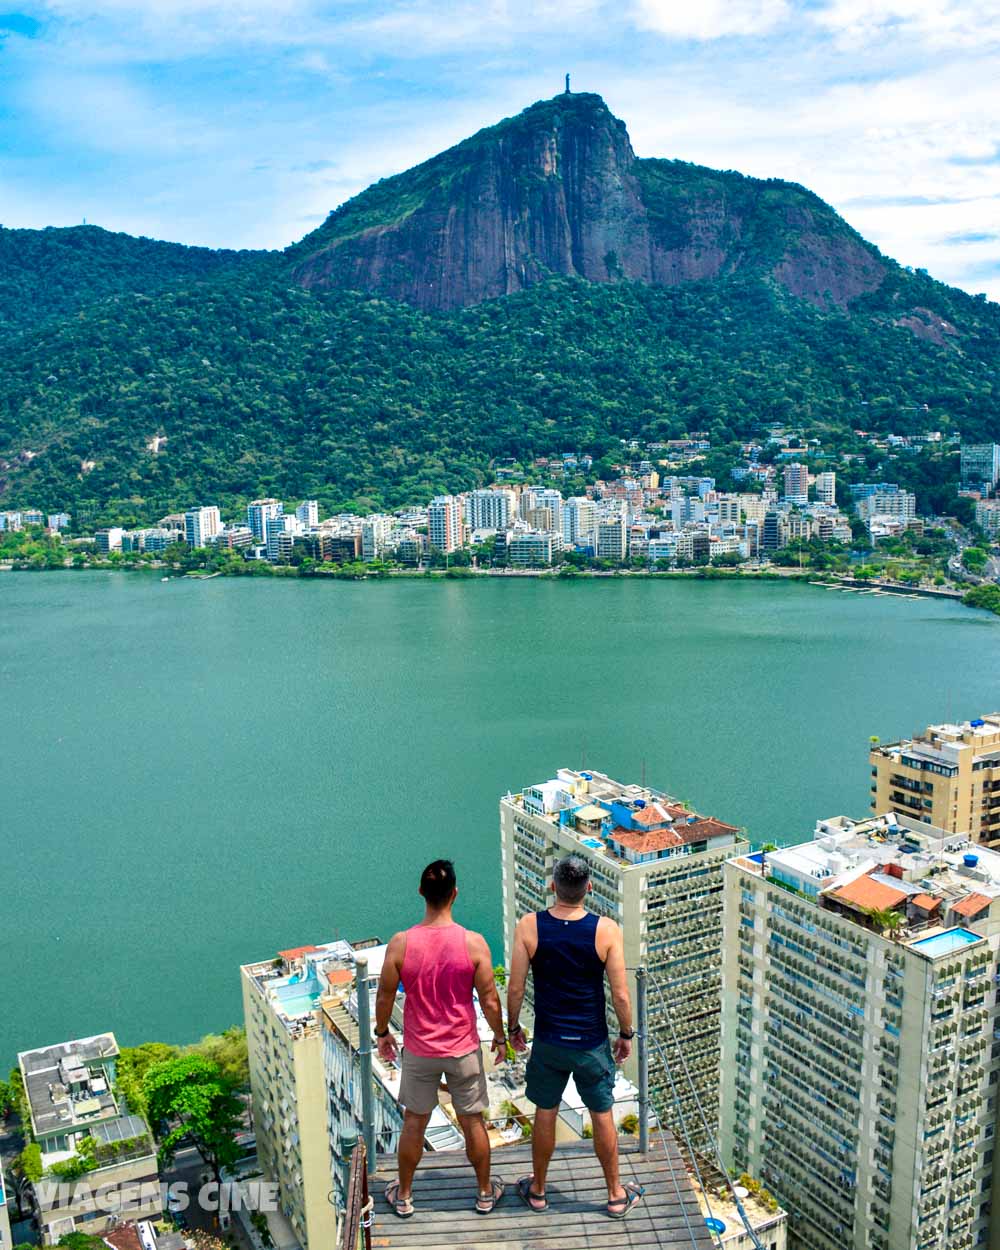 Mirantes no Rio de Janeiro Grátis, Baratos e Fáceis de Chegar